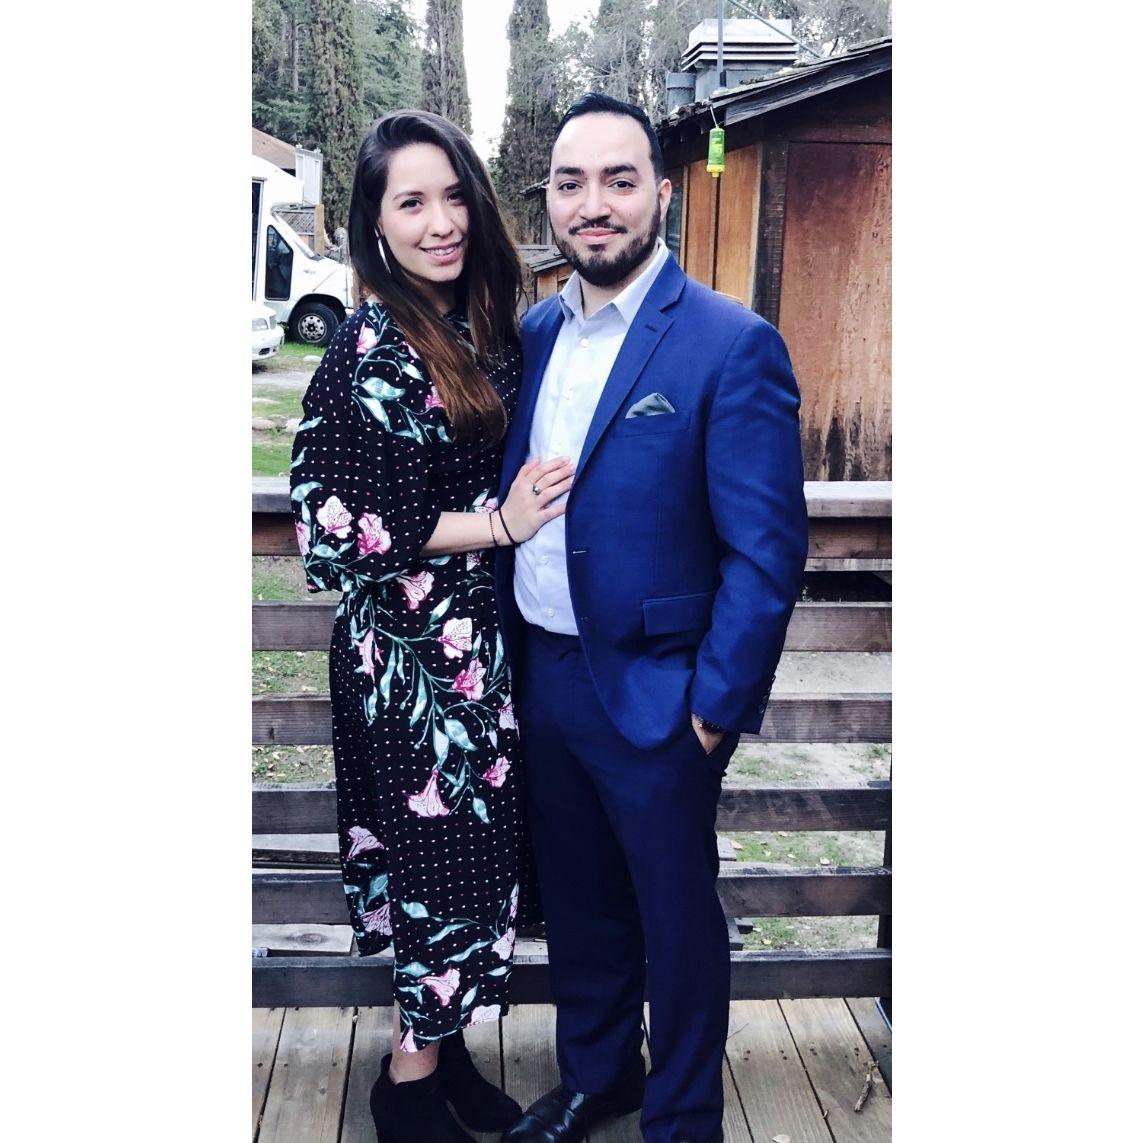 Circa 2018 - Cara & Jorge's wedding (Valenzuela takeover)